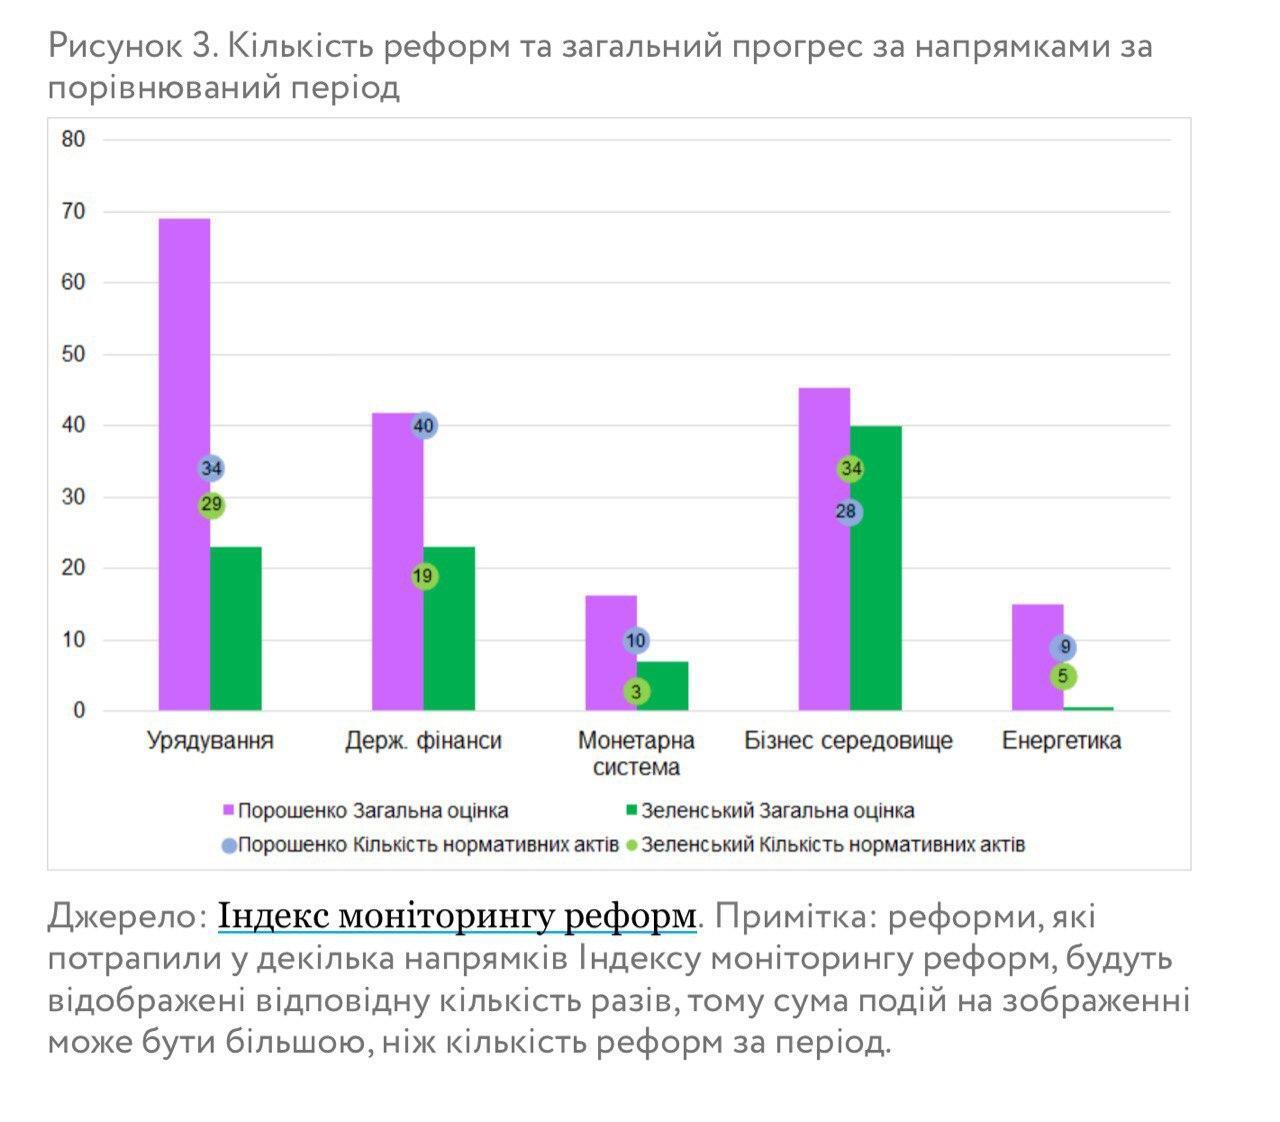 Порошенко был лучше Зеленского: эксперты проанализировали первый год каденции двух президентов Украины